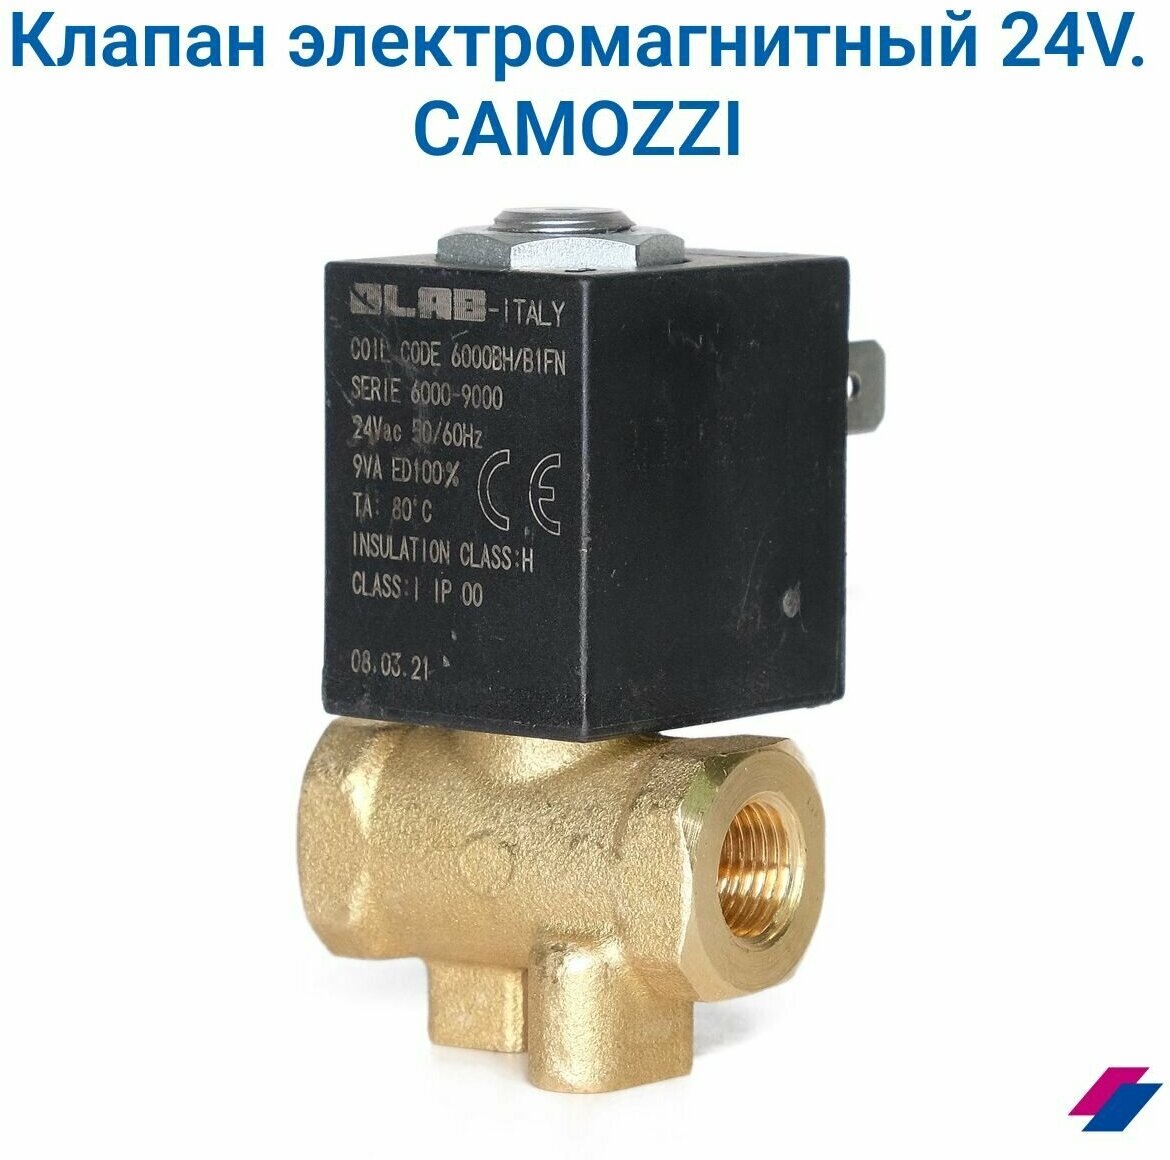 Клапан электромагнитный 24V AC, 5946/P. CAMOZZI